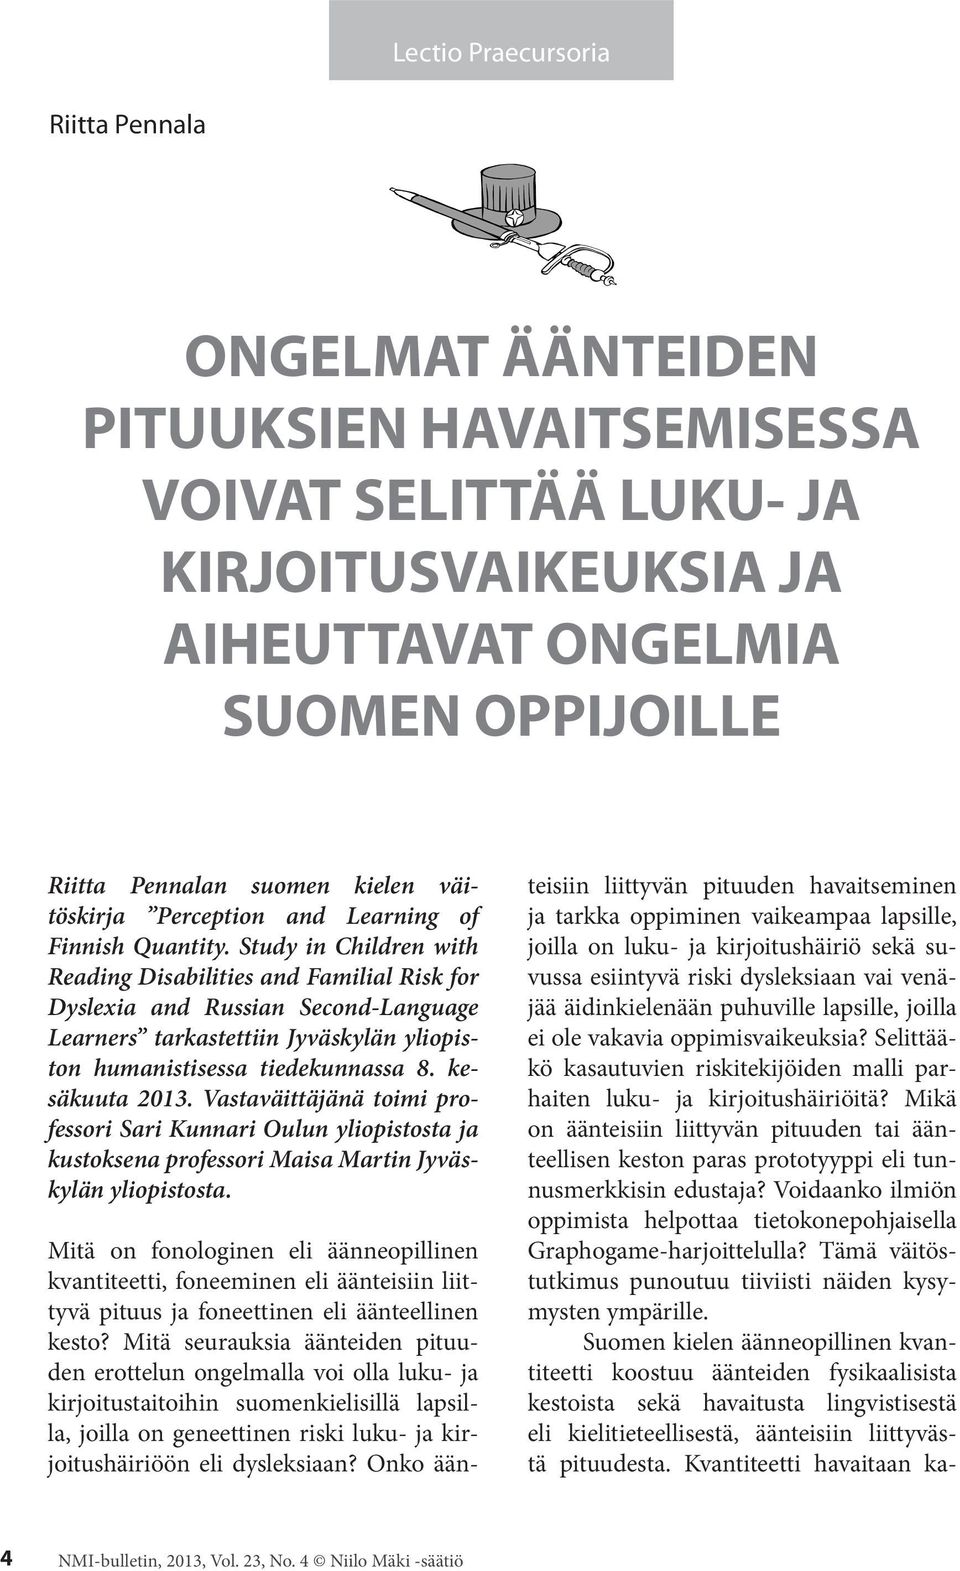 Study in Children with Reading Disabilities and Familial Risk for Dyslexia and Russian Second-Language Learners tarkastettiin Jyväskylän yliopiston humanistisessa tiedekunnassa 8. kesäkuuta 2013.